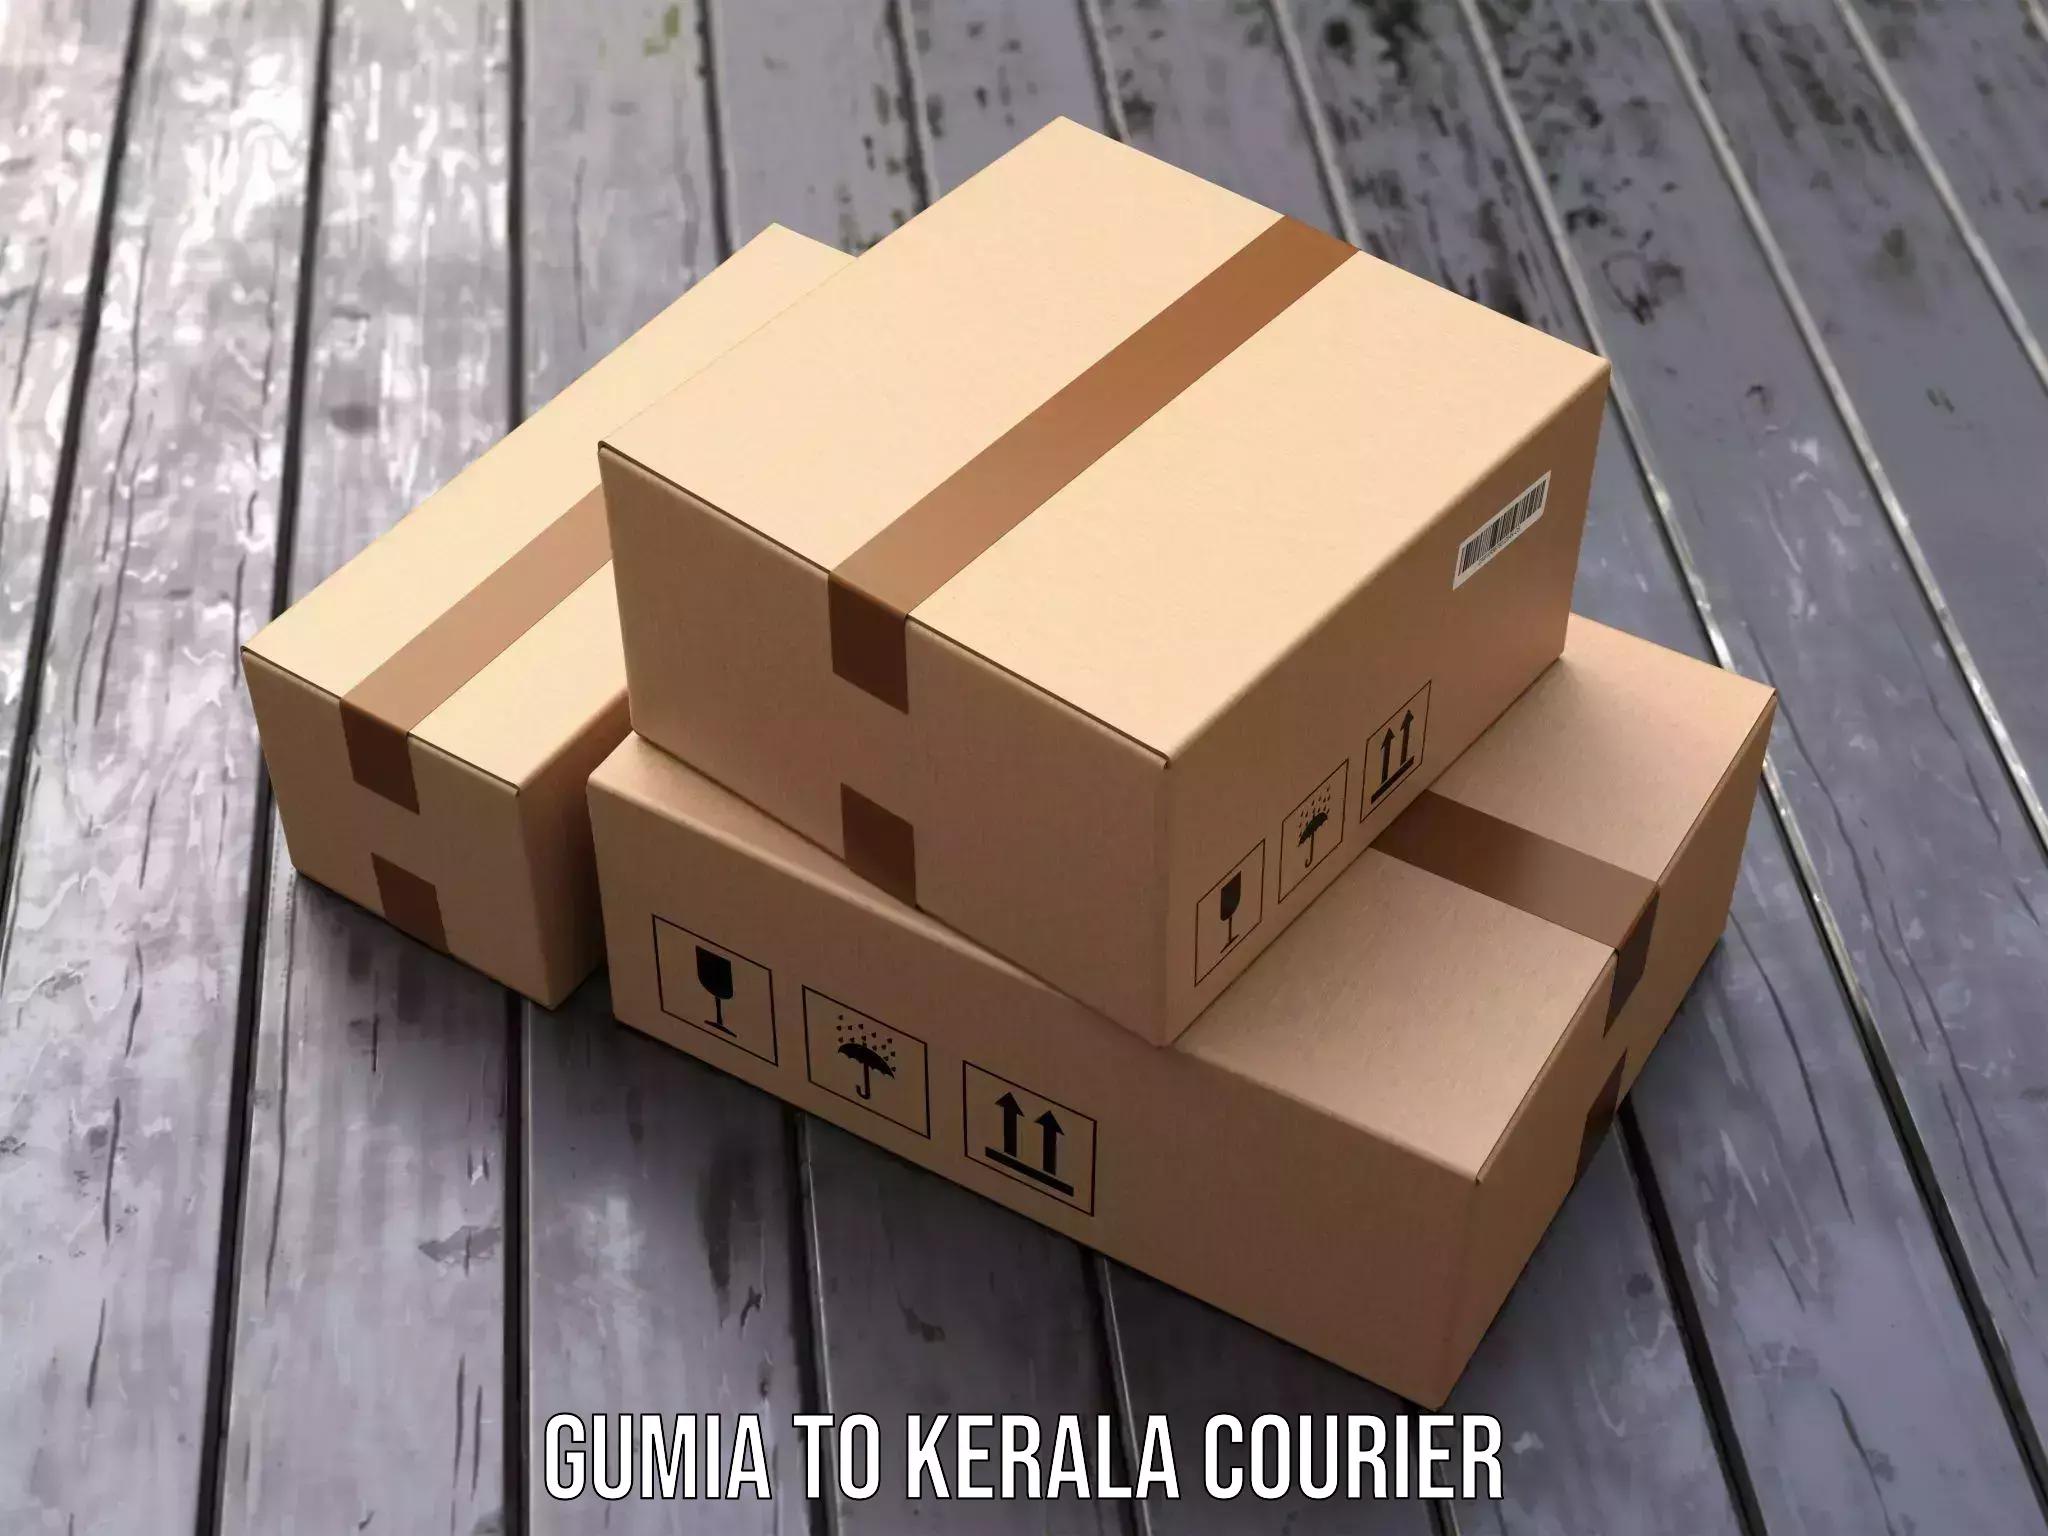 Professional courier services Gumia to Kottarakkara